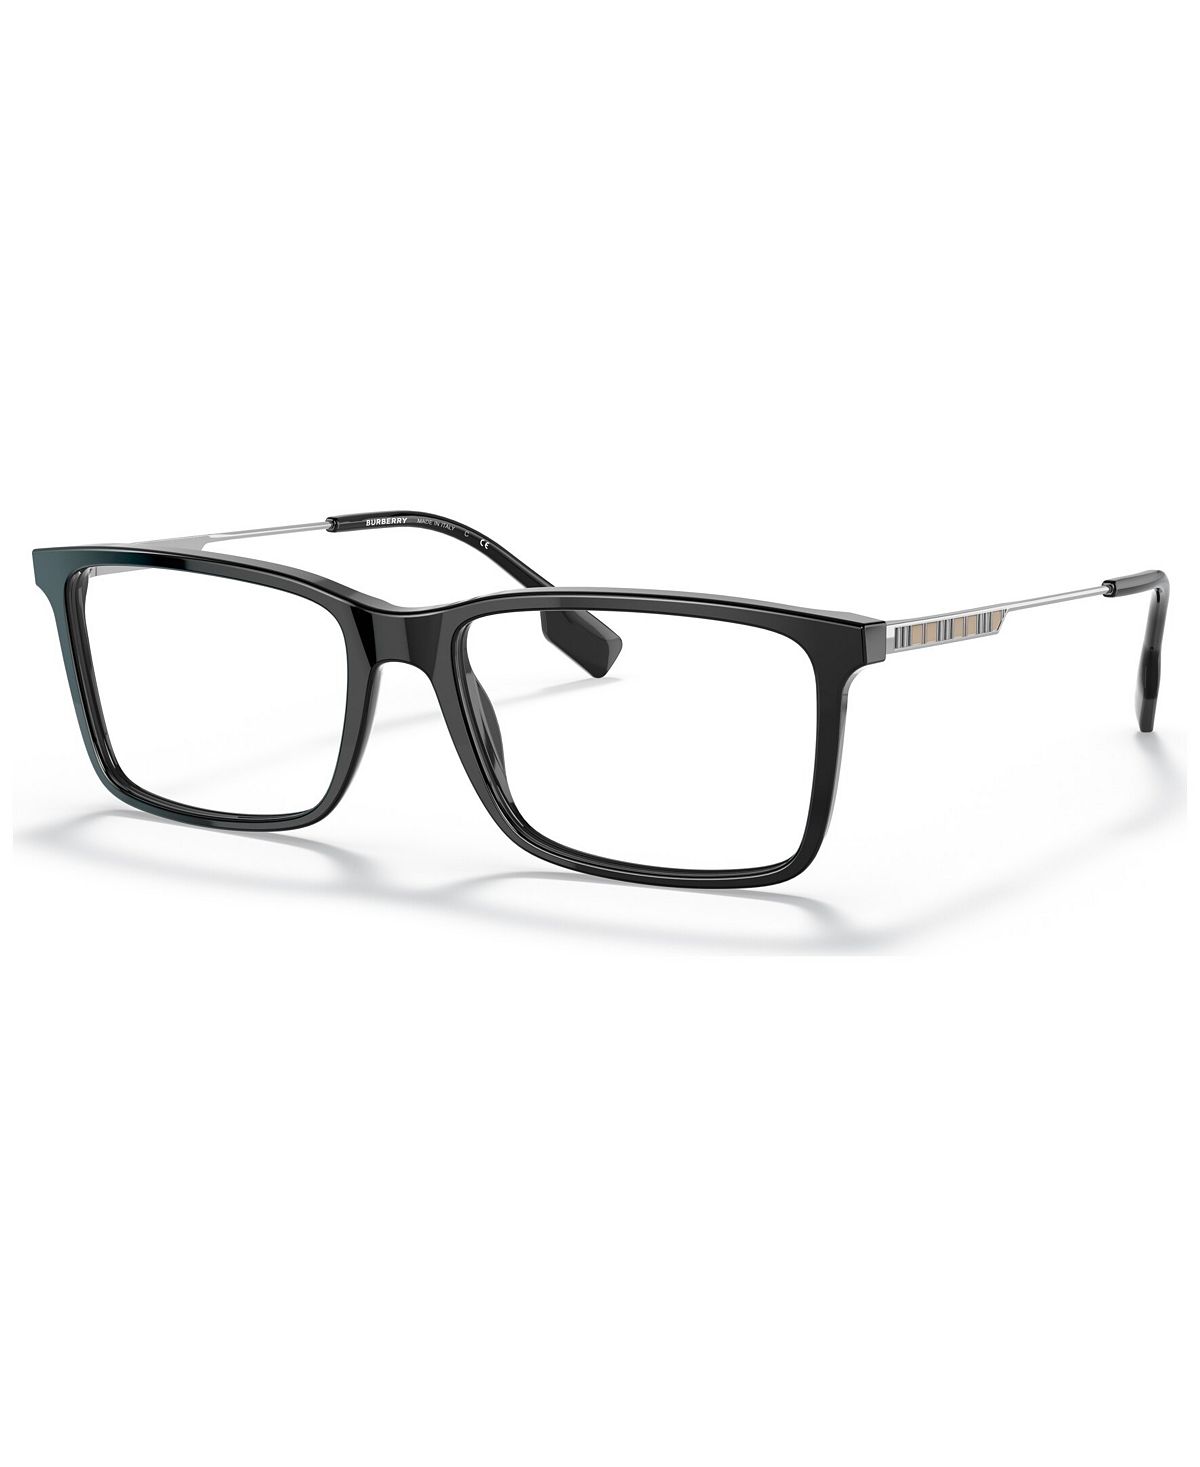 Мужские прямоугольные очки, BE233957-O Burberry мужские прямоугольные очки be236954 o burberry